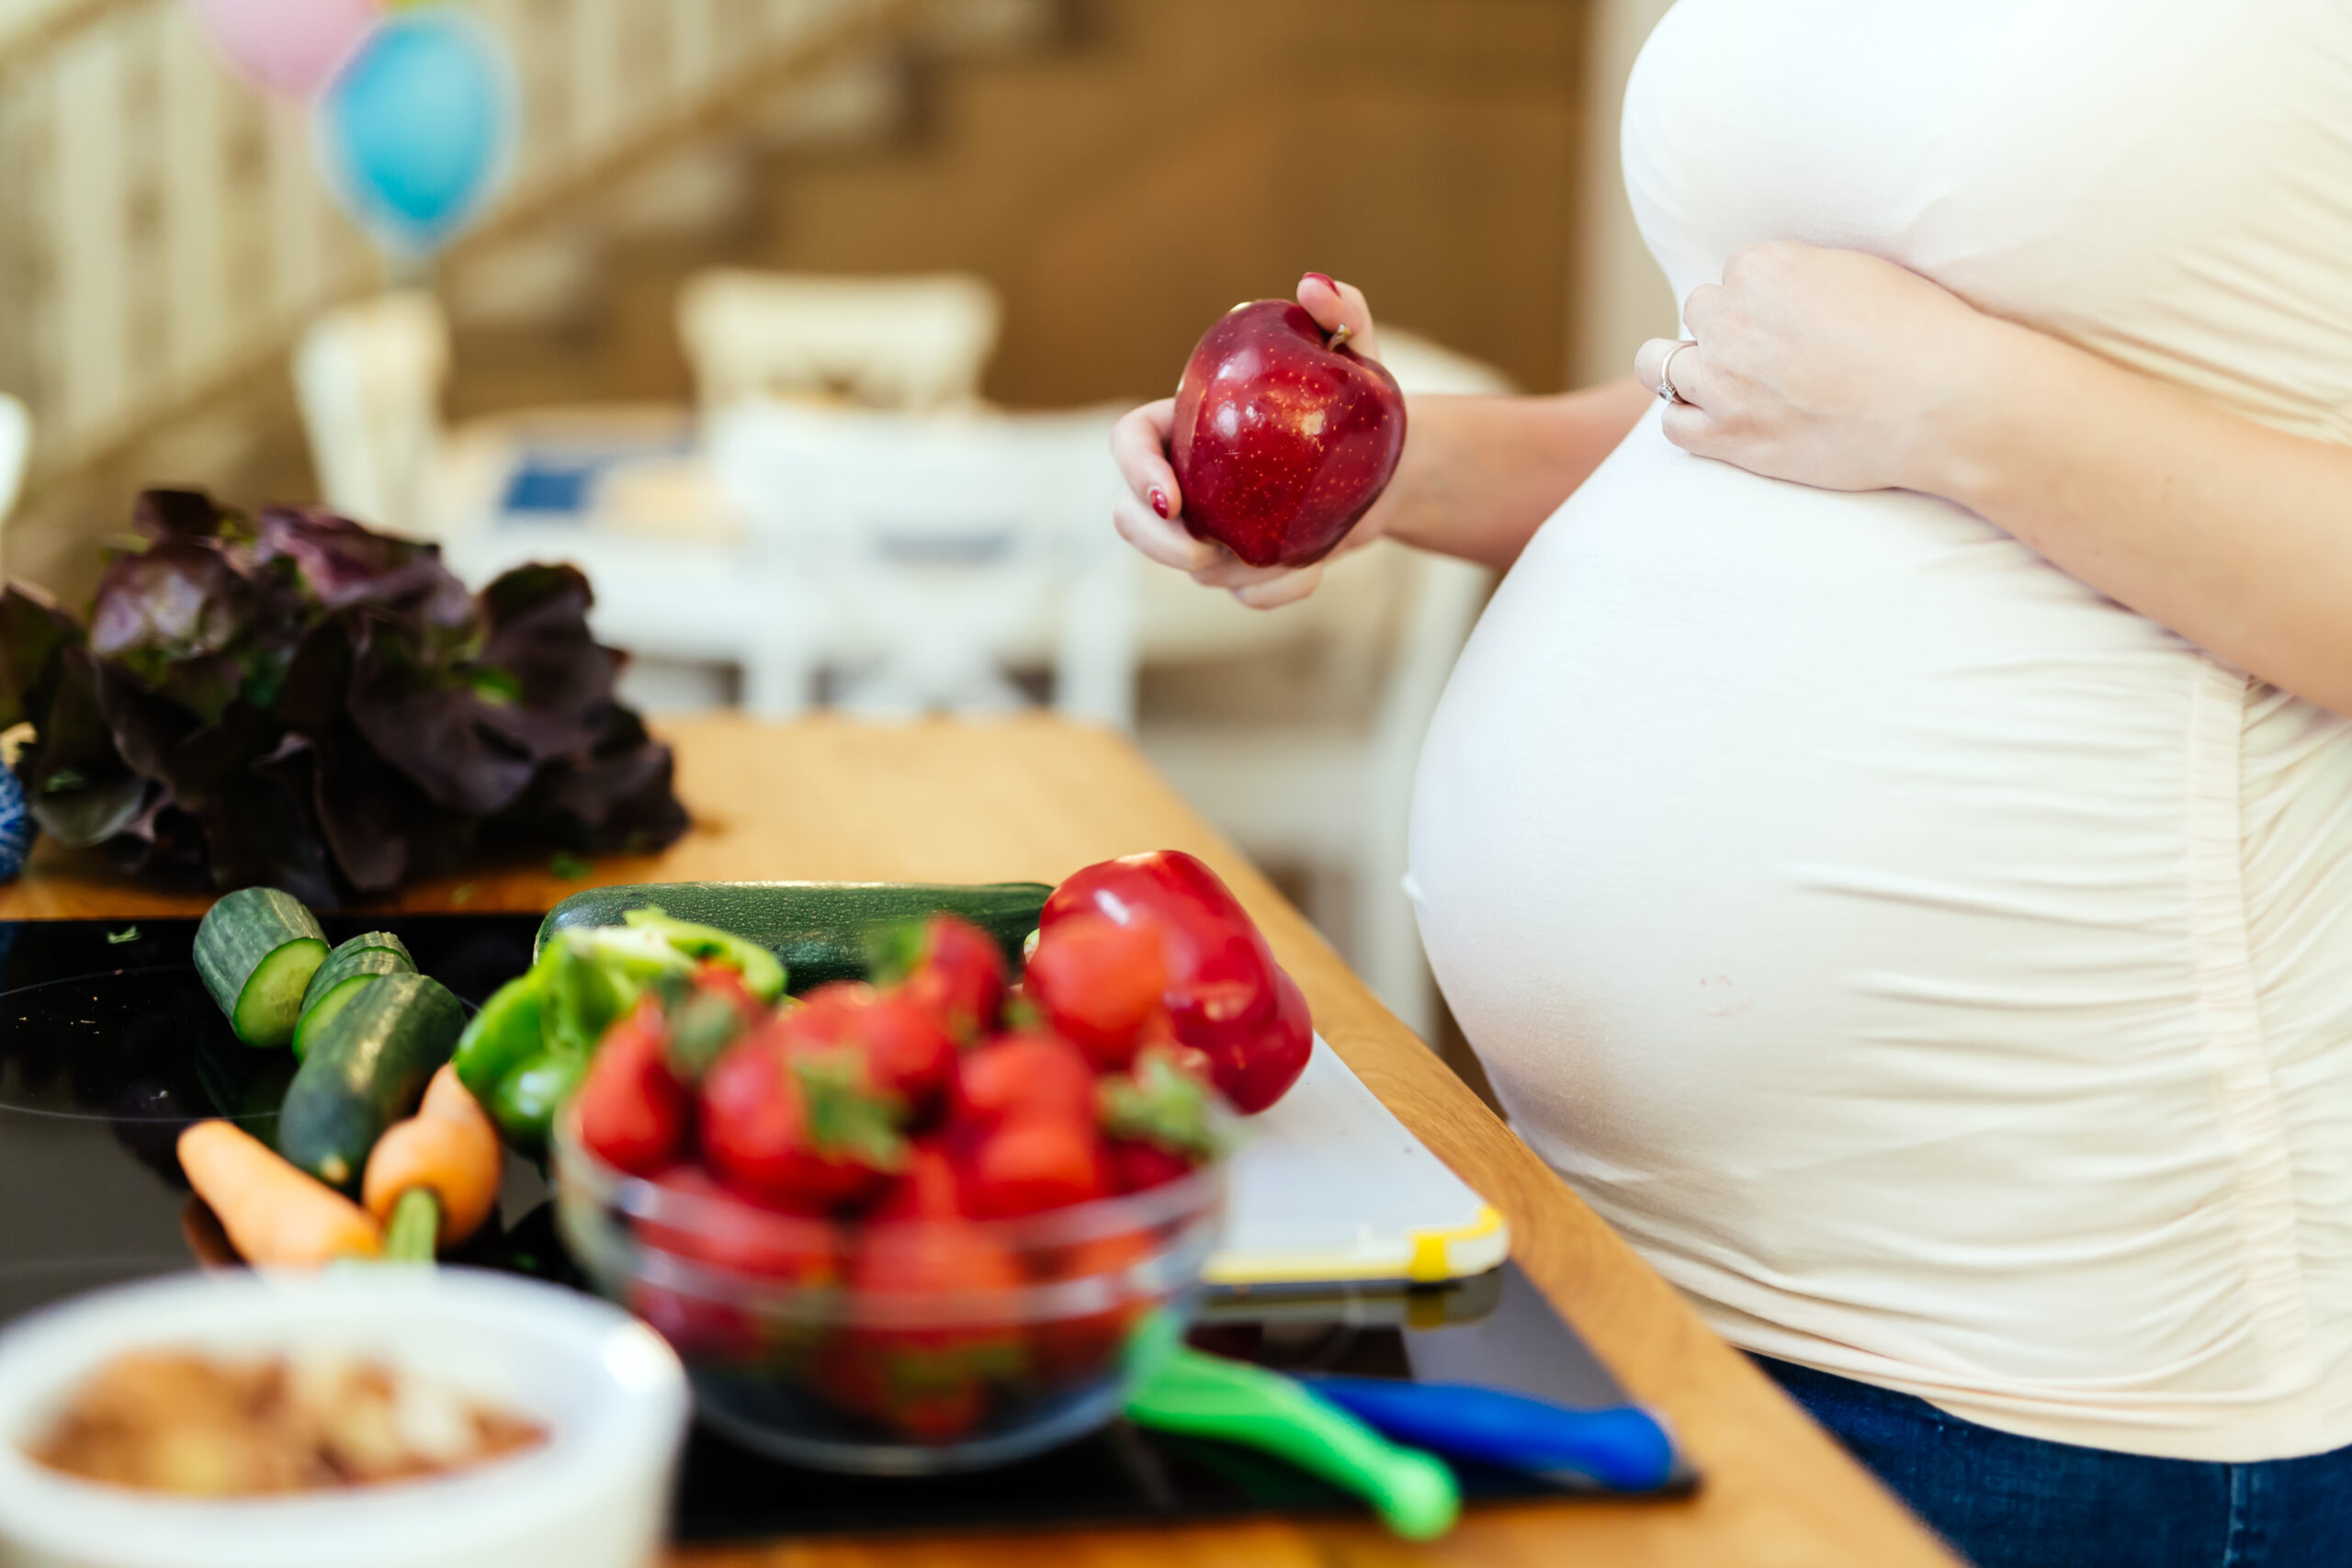 Kiat Diet yang Aman bagi Ibu Hamil